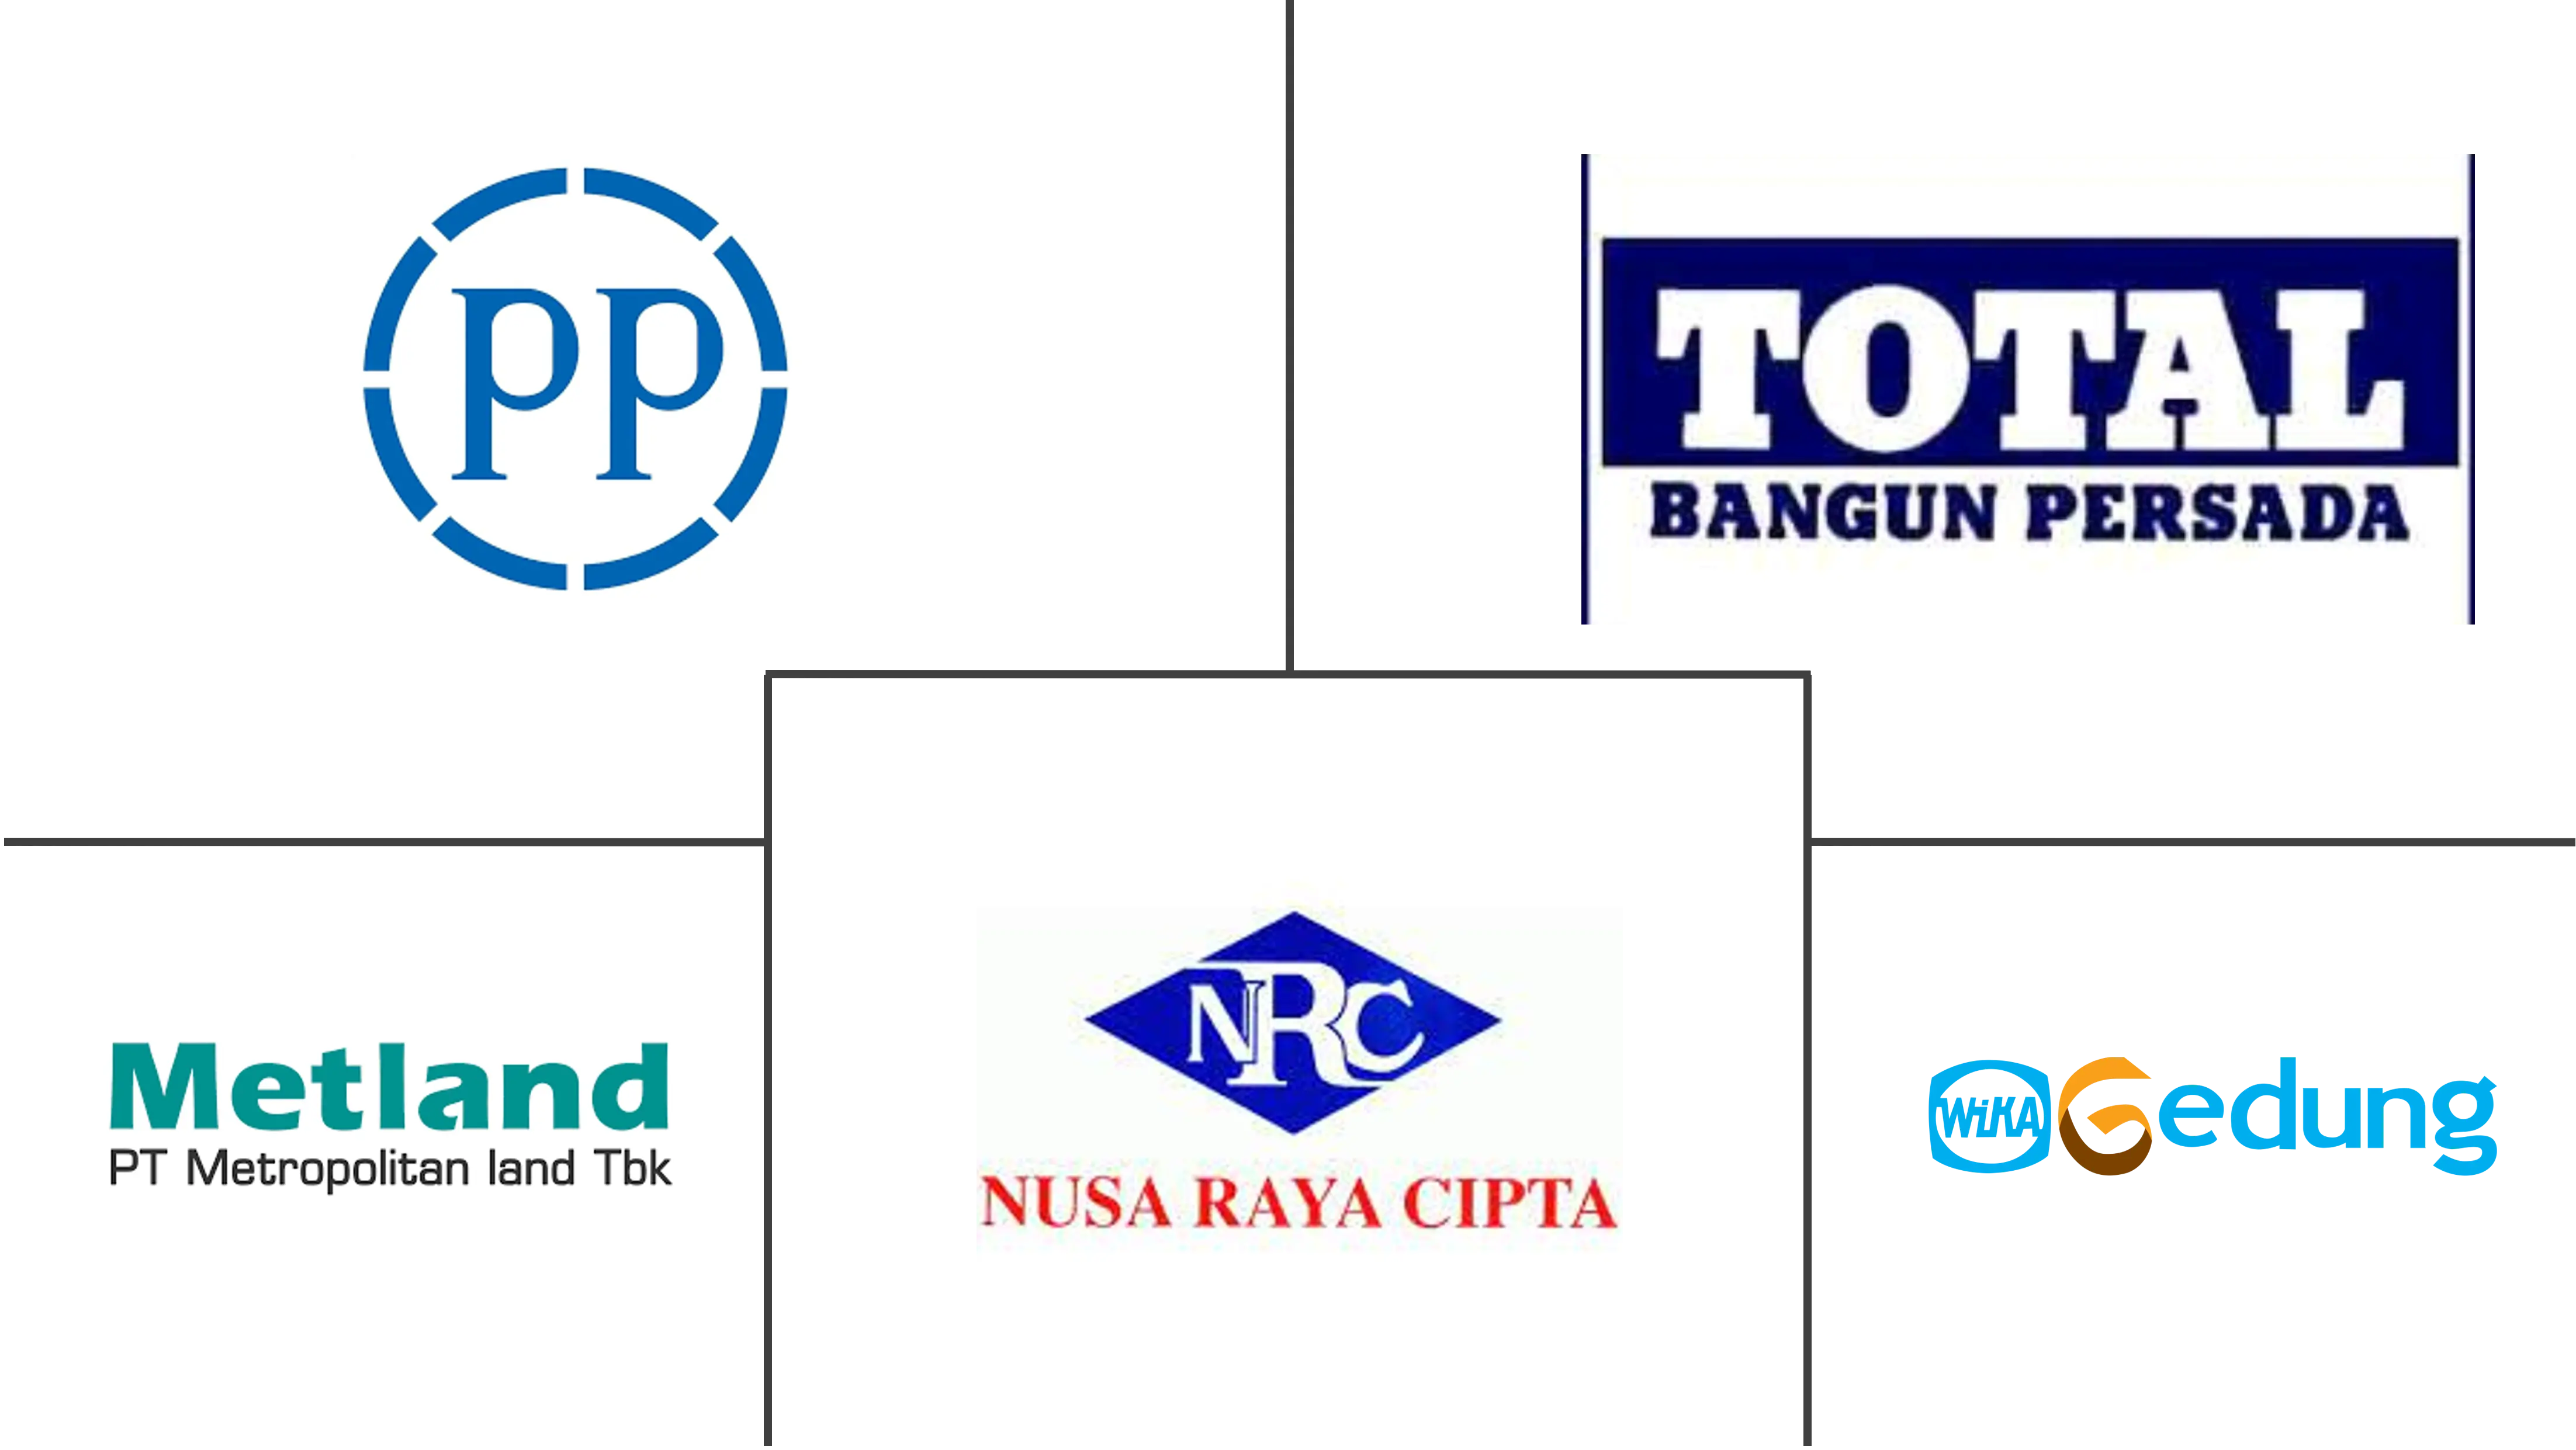 インドネシアの商業建設市場の主要企業